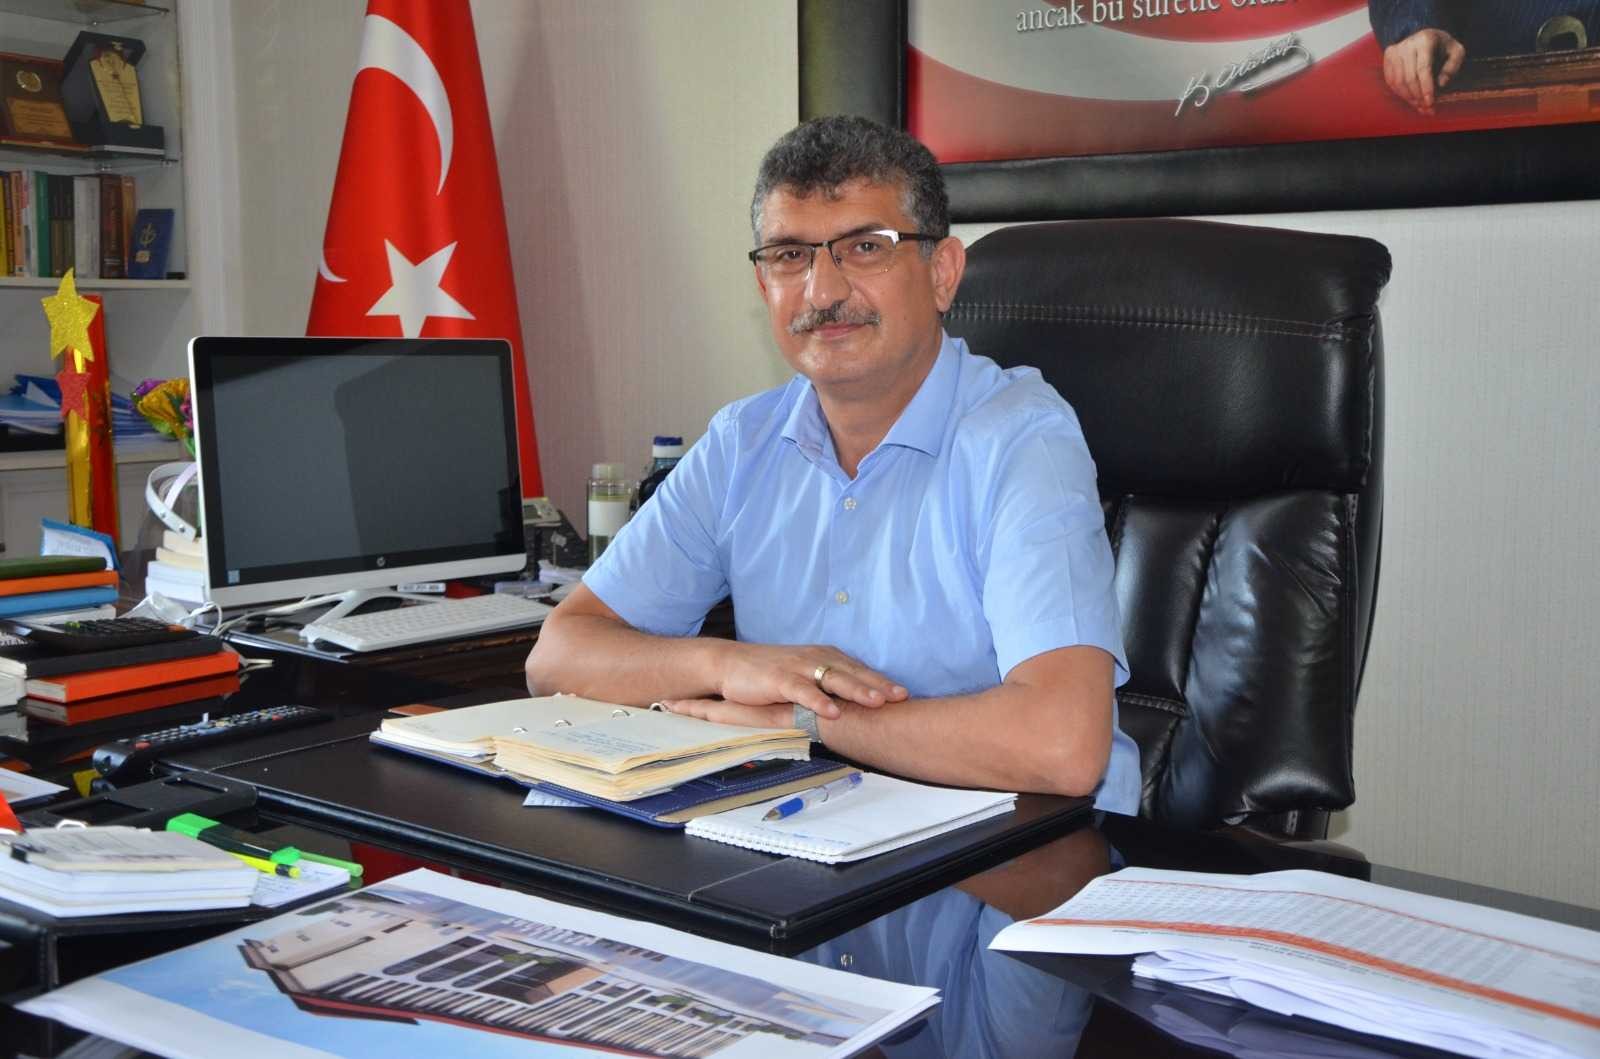 Fatsa İlçe Milli Eğitim Müdürü Atinkaya: “Yüz yüze eğitim sorunsuz devam ediyor” #ordu